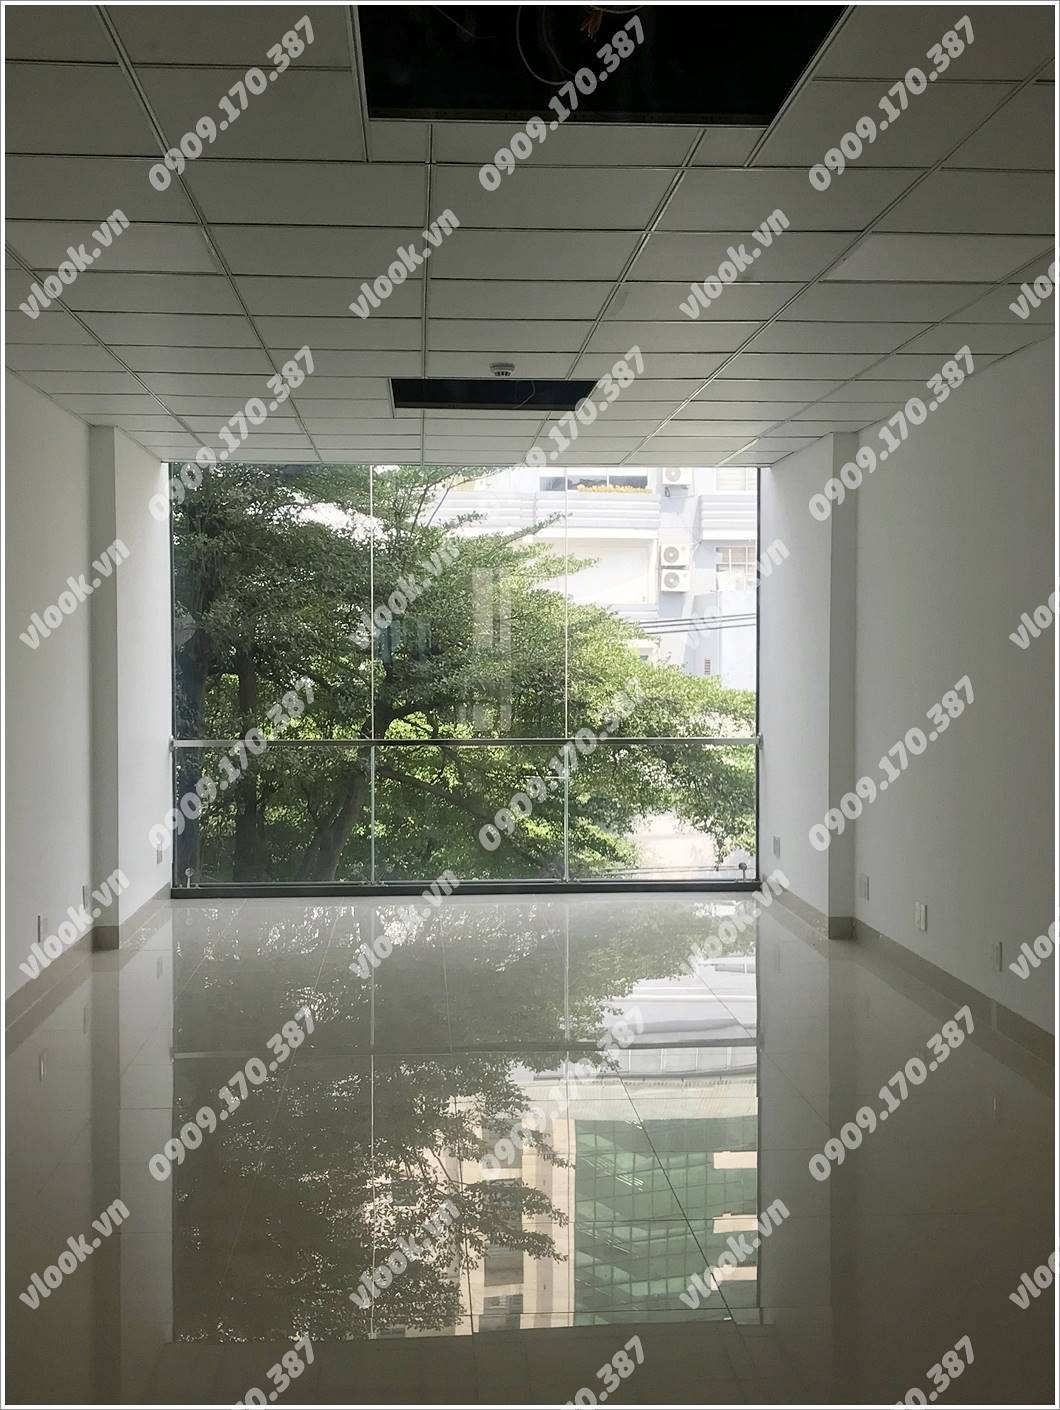 Bên trong cao ốc cho thuê văn phòng Global Building, Đường A4, Quận Tân Bình, TPHCM - vlook.vn